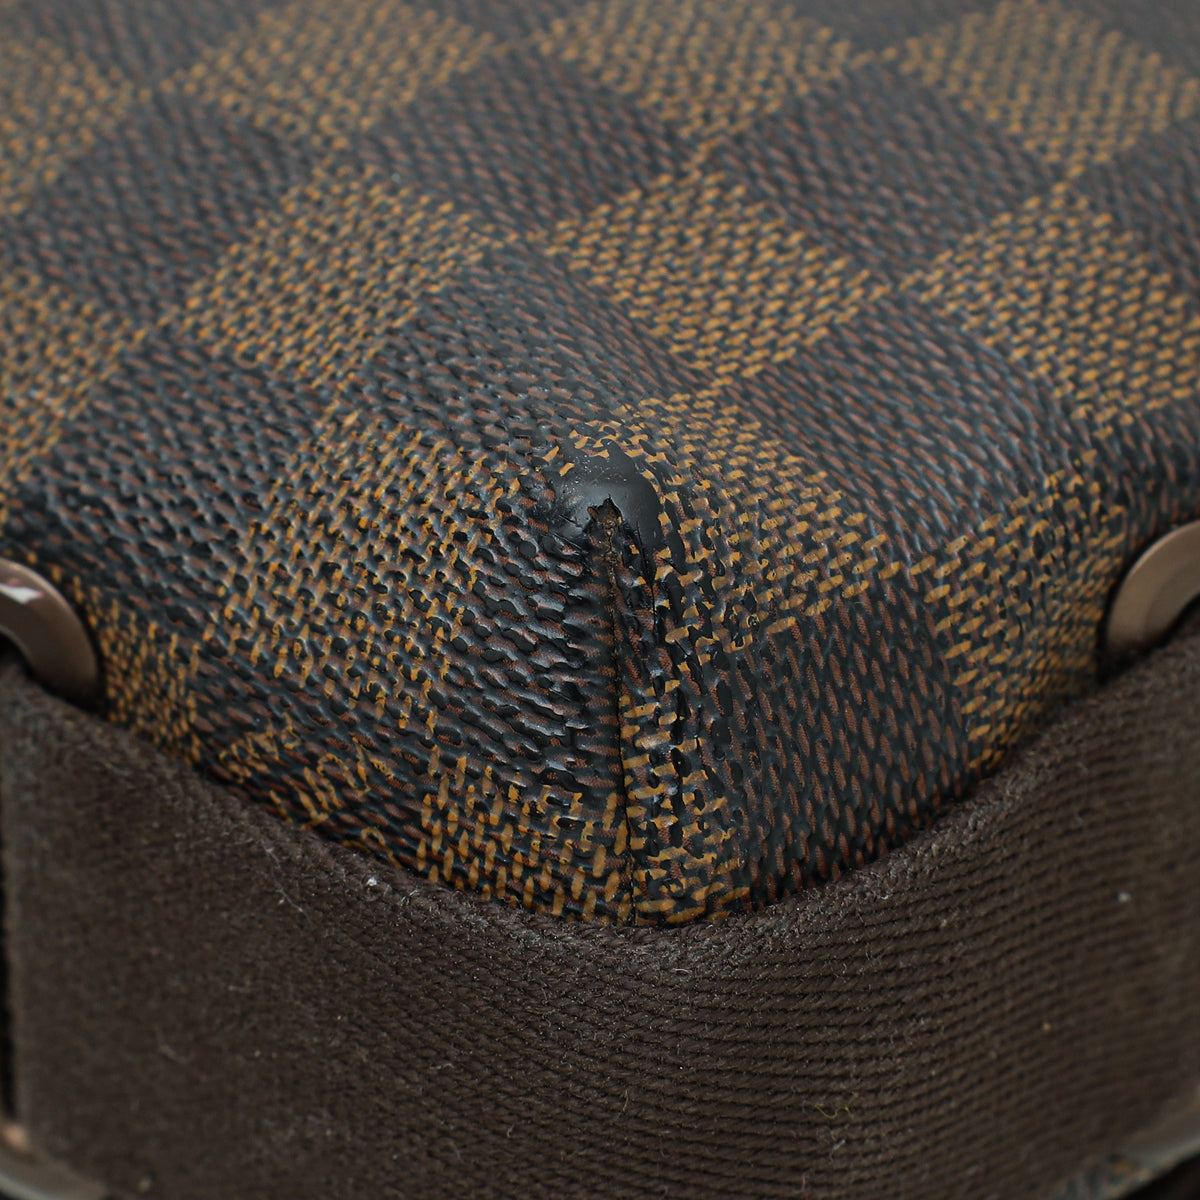 PRE ORDER-Louis Vuitton Brooklyn Damier MM ทรง Messenger Bag ที่ฮิ